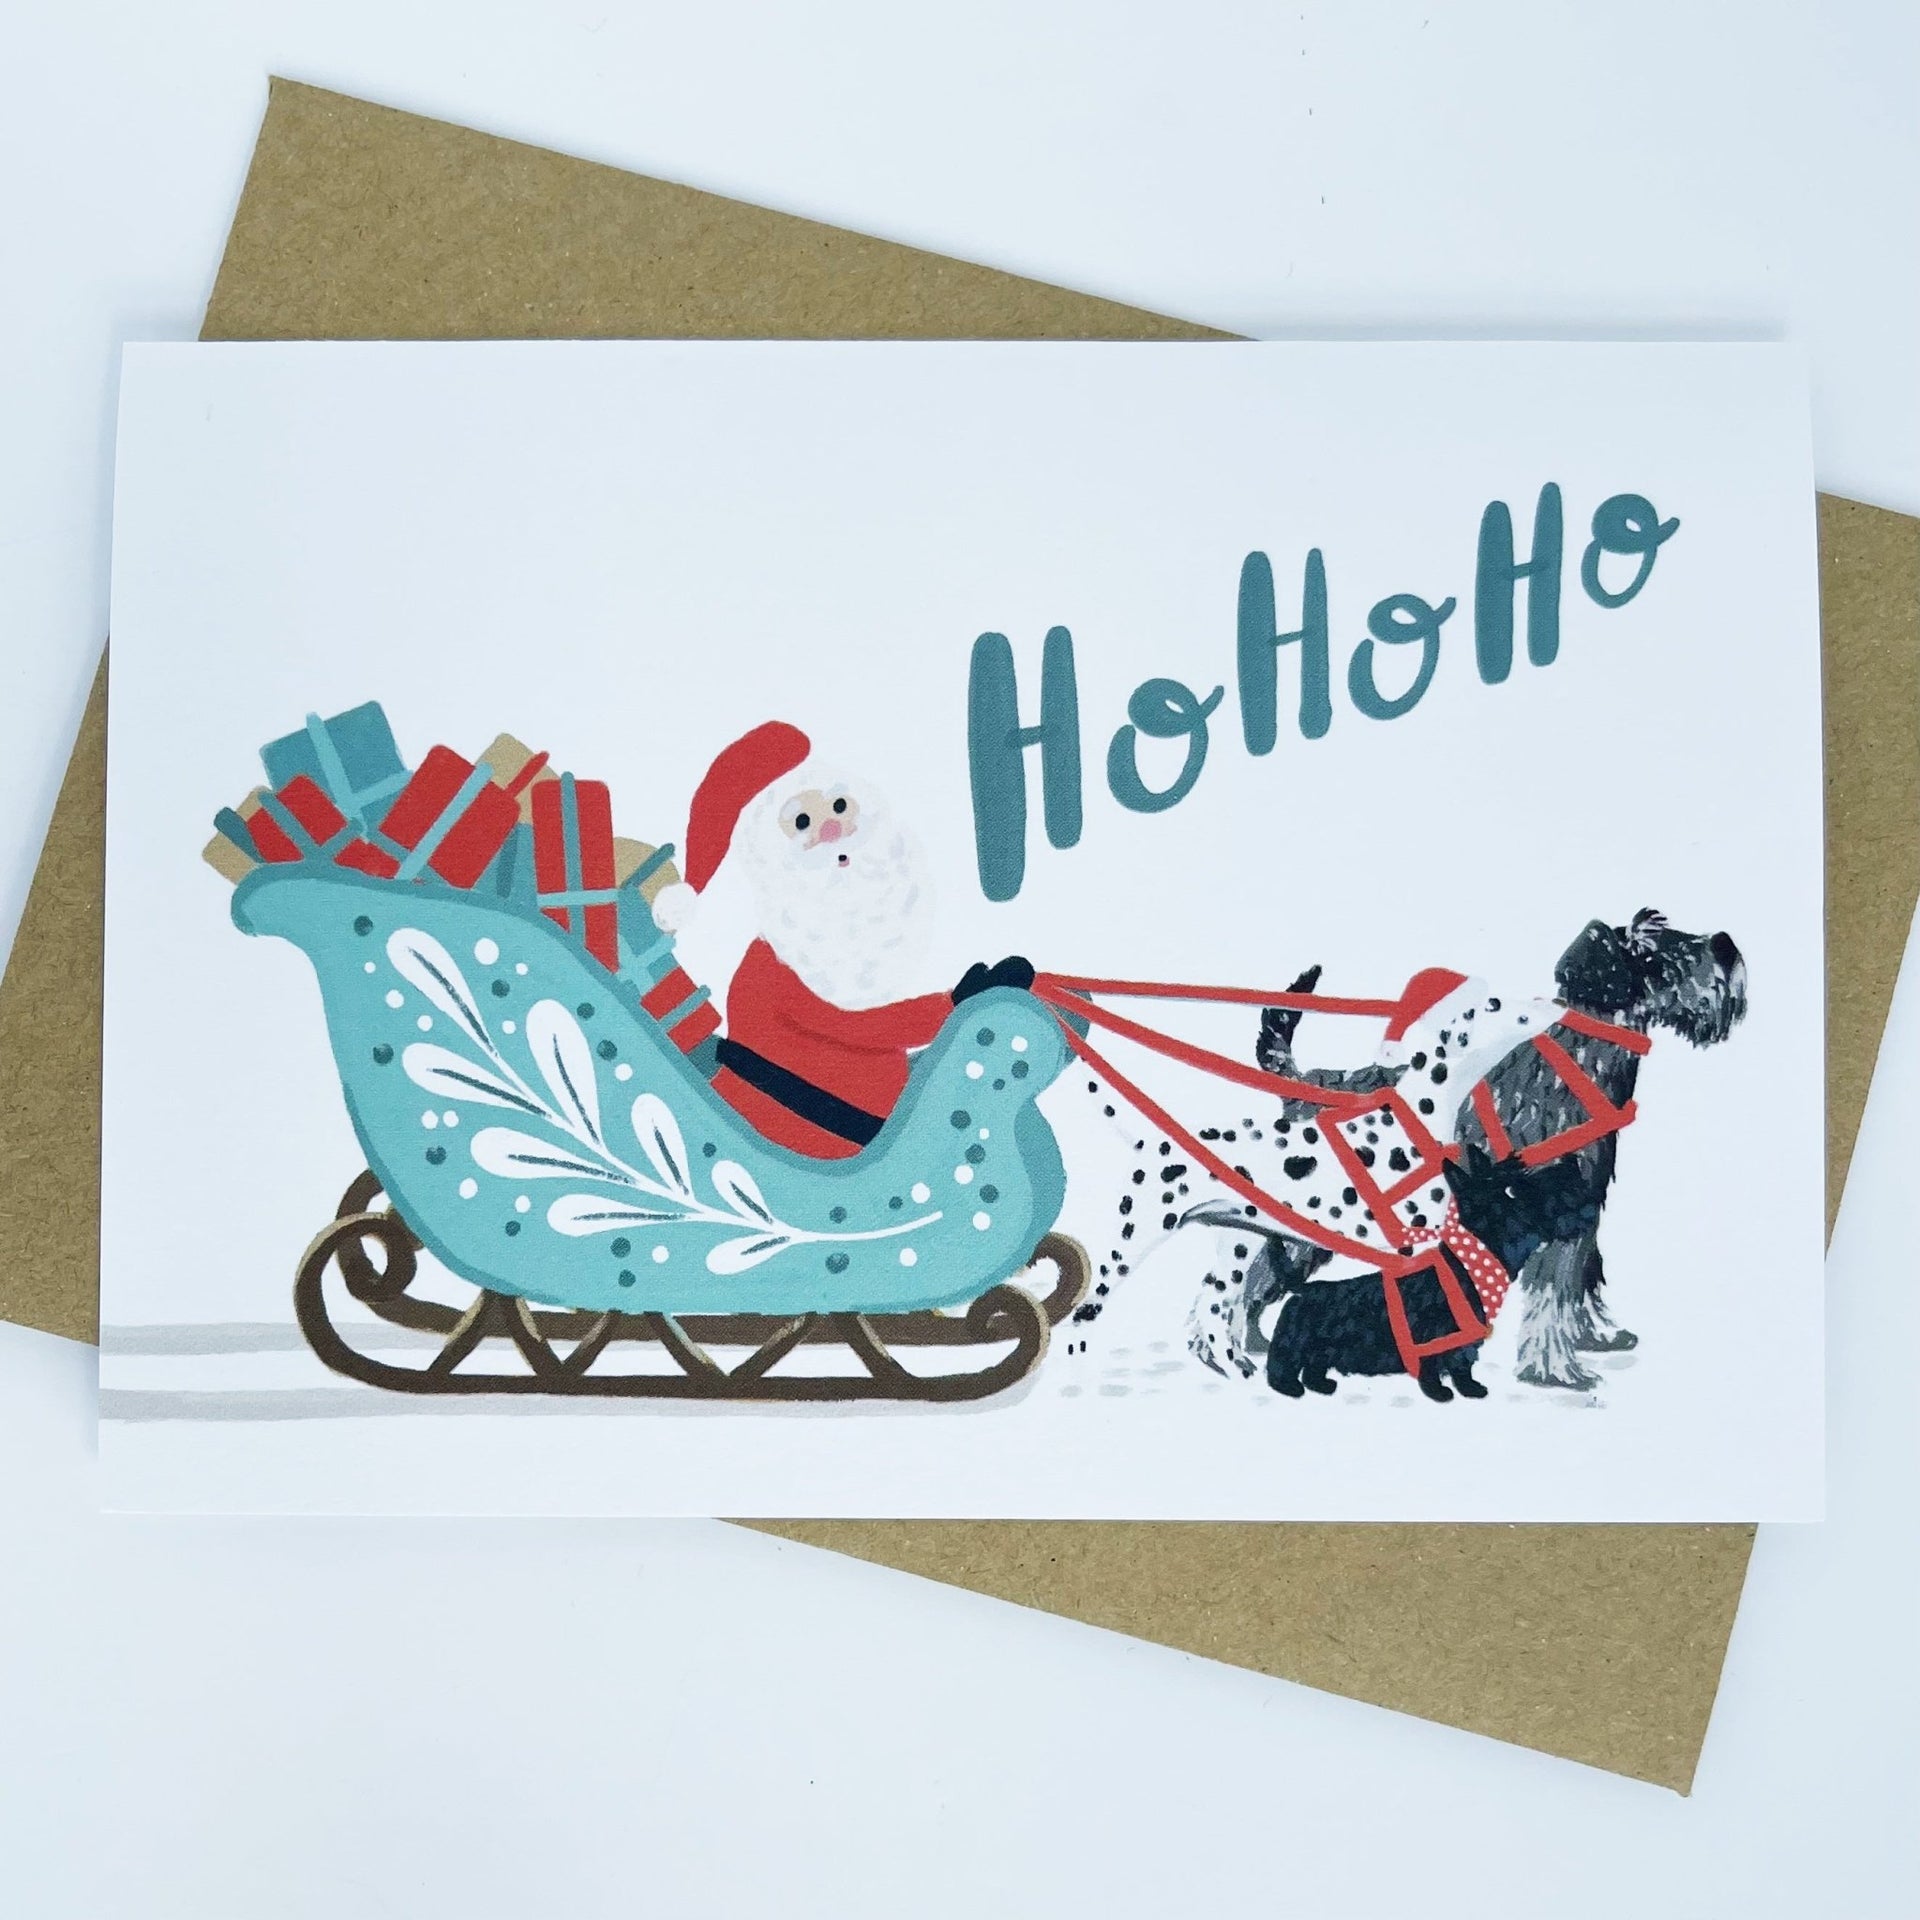 Sleigh & Dogs - Ho Ho Ho Christmas Card - Made Scotland